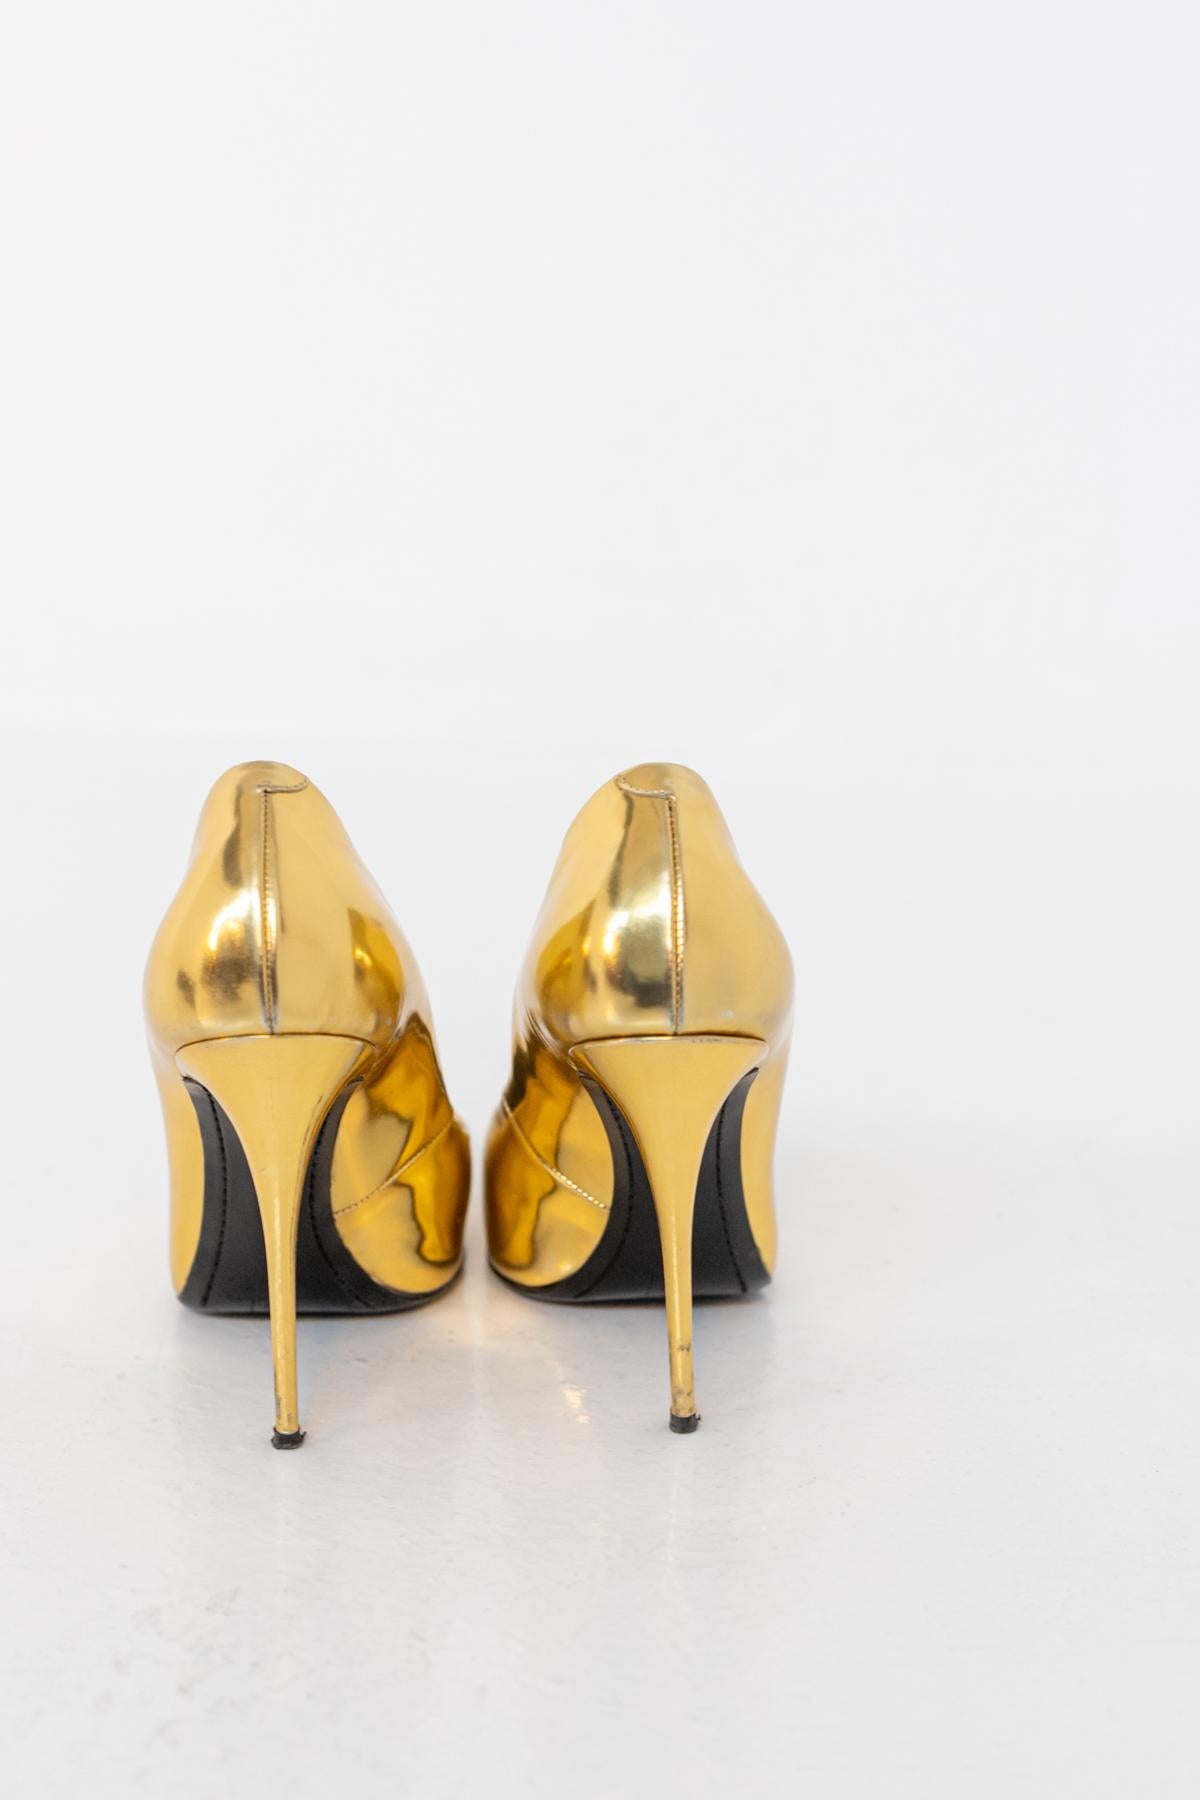 Elegantes und glamouröses Paar Damenschuhe aus goldenem Leder. Der Decoltè ist ein edler 12 cm hoher Stilettoabsatz. Der Fuß des Schuhs ist spitz mit einem eleganten Decoltè, dass die Sohle des Fußes sehr harmonisch und elegant macht. Nur 3 Mal